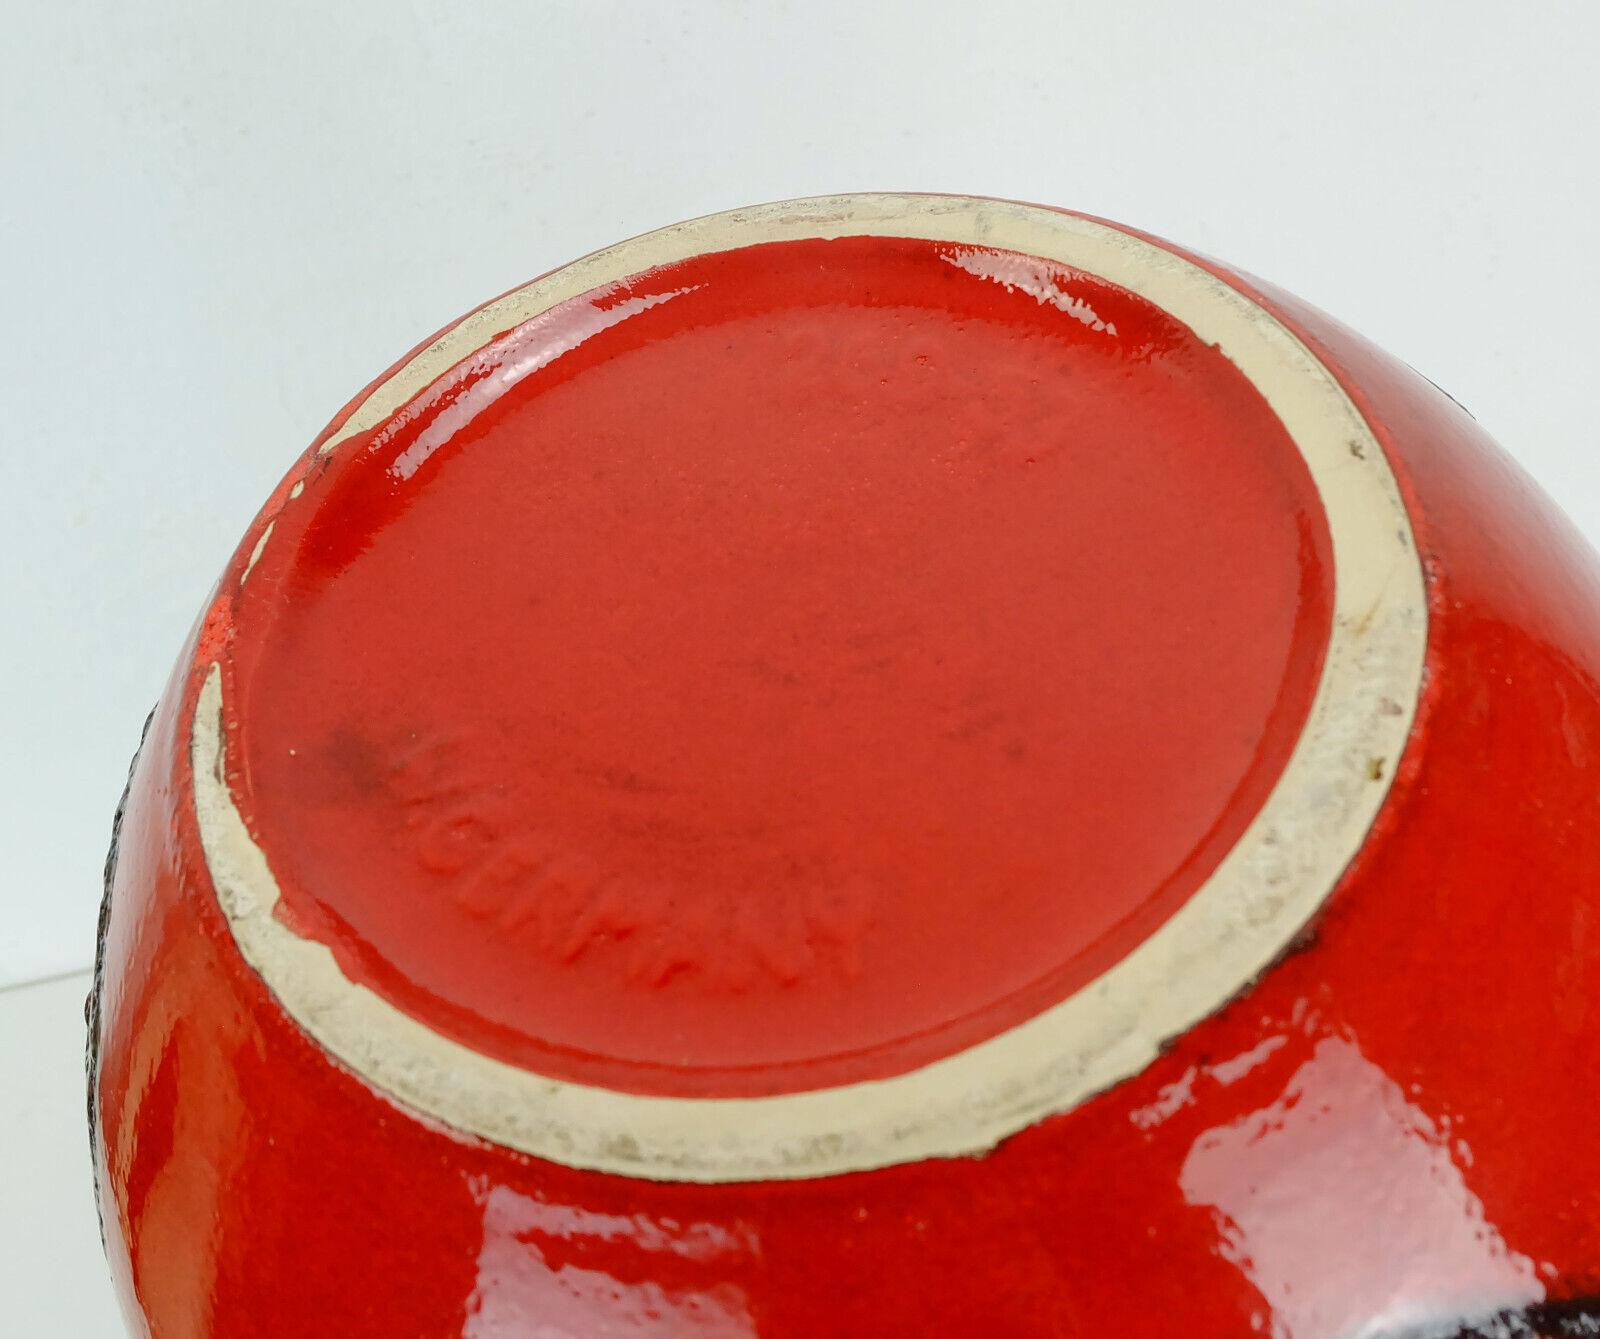 Riesige Vintage-Bodenvase aus Keramik, hergestellt von Scheurich Keramik in den 1960er Jahren. Serie 'Vienna', Modell Nr. 269-53 mit roter und oranger Glasur und schwarzer Fettlava-Glasur. Abstraktes Blattdekor. Ein großartiges Sammlerstück und in